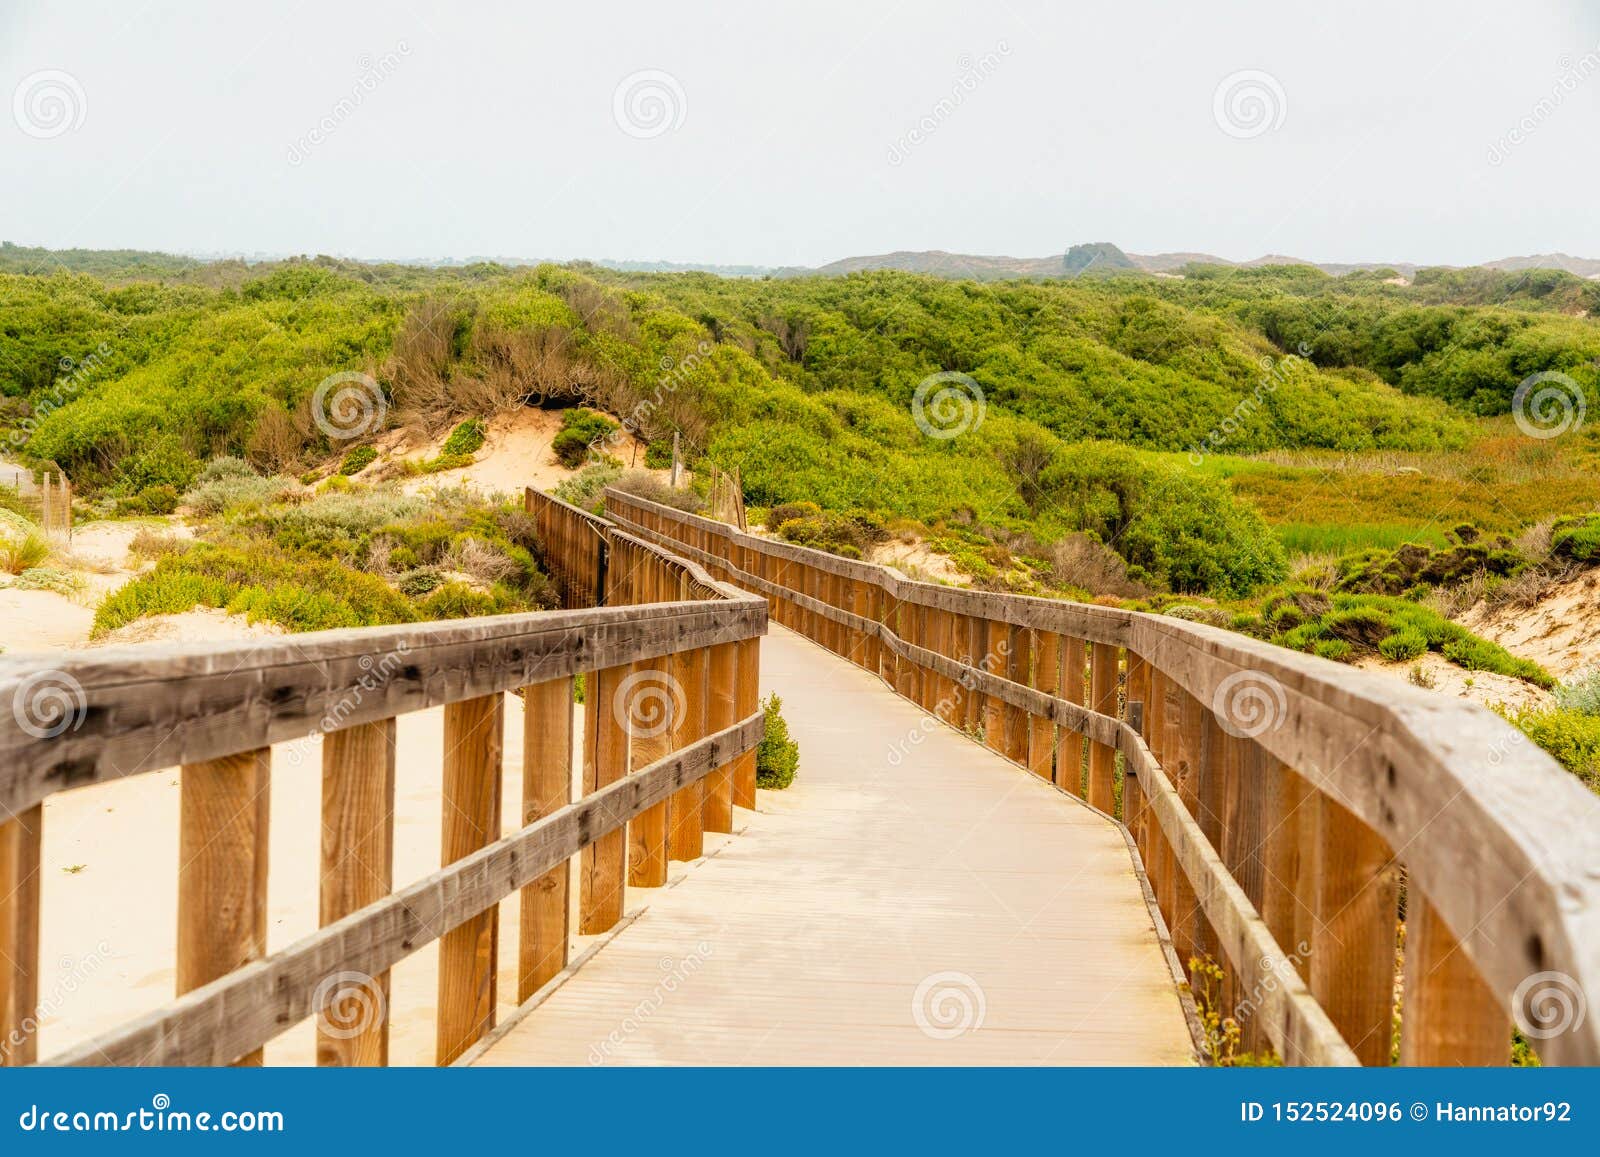 wooden boardwalk through the dunes. oso flaco lake natural area, oceano, california